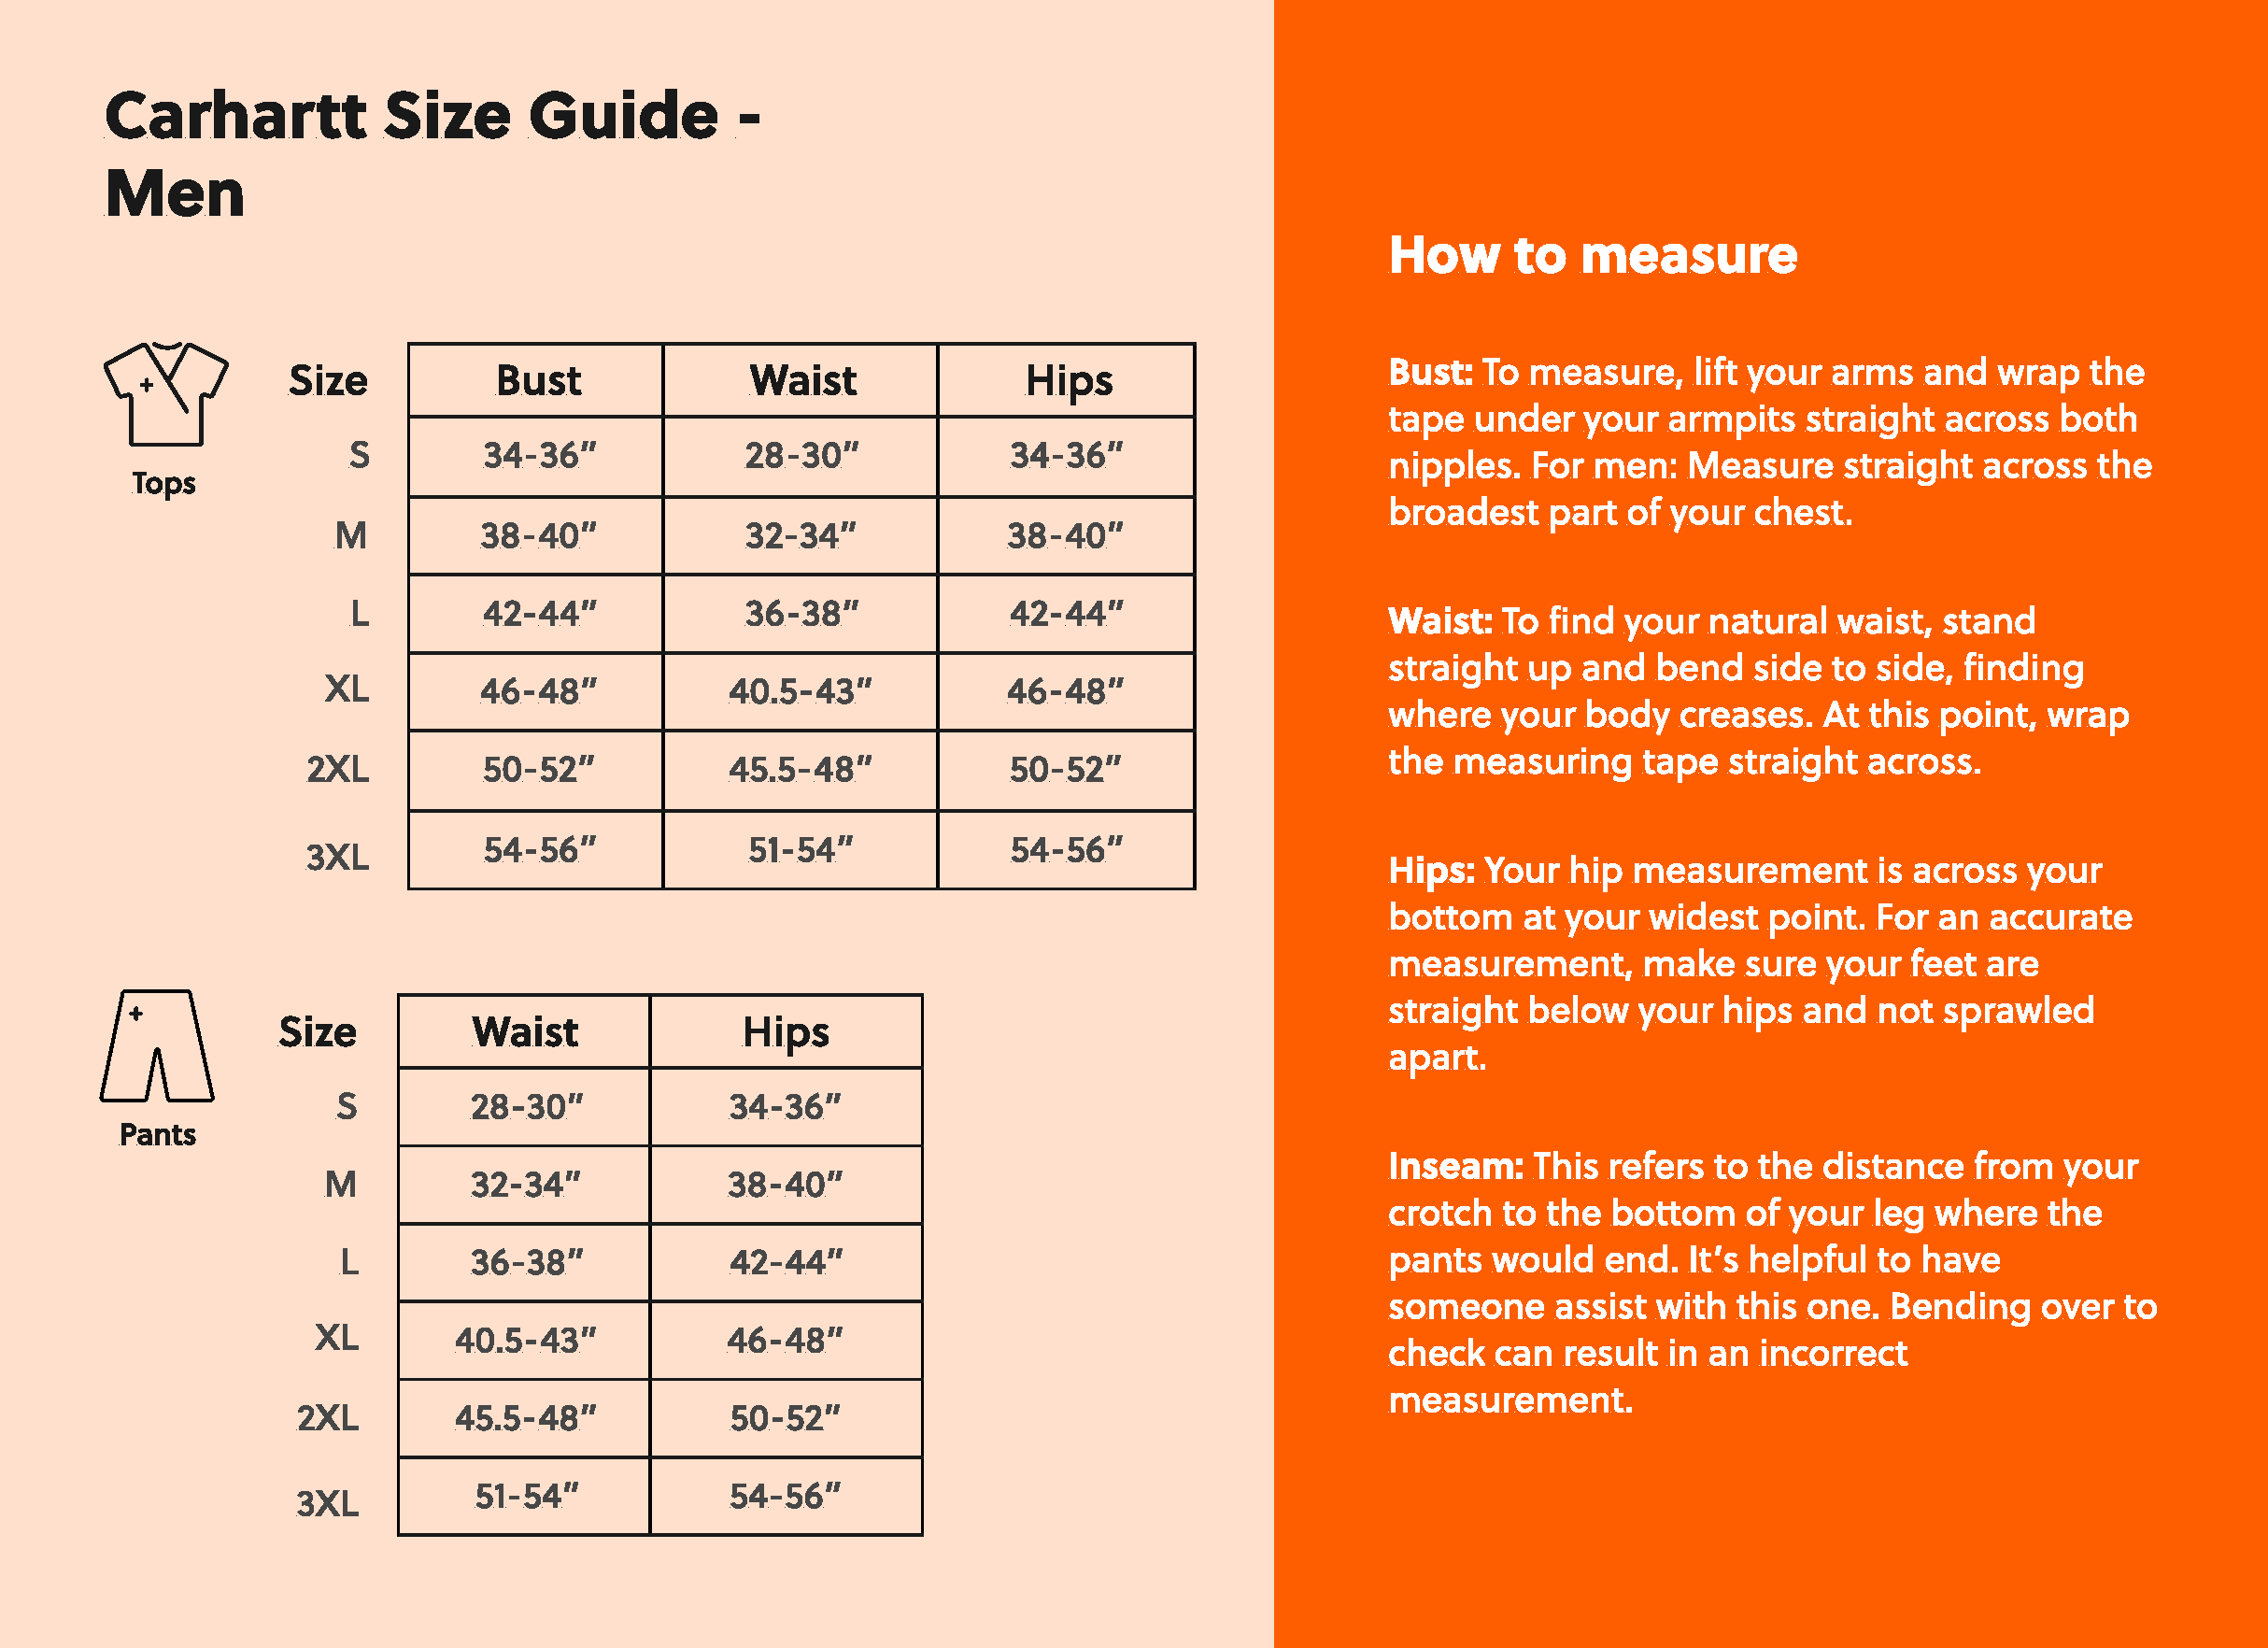 Carhartt Size Guide for Men